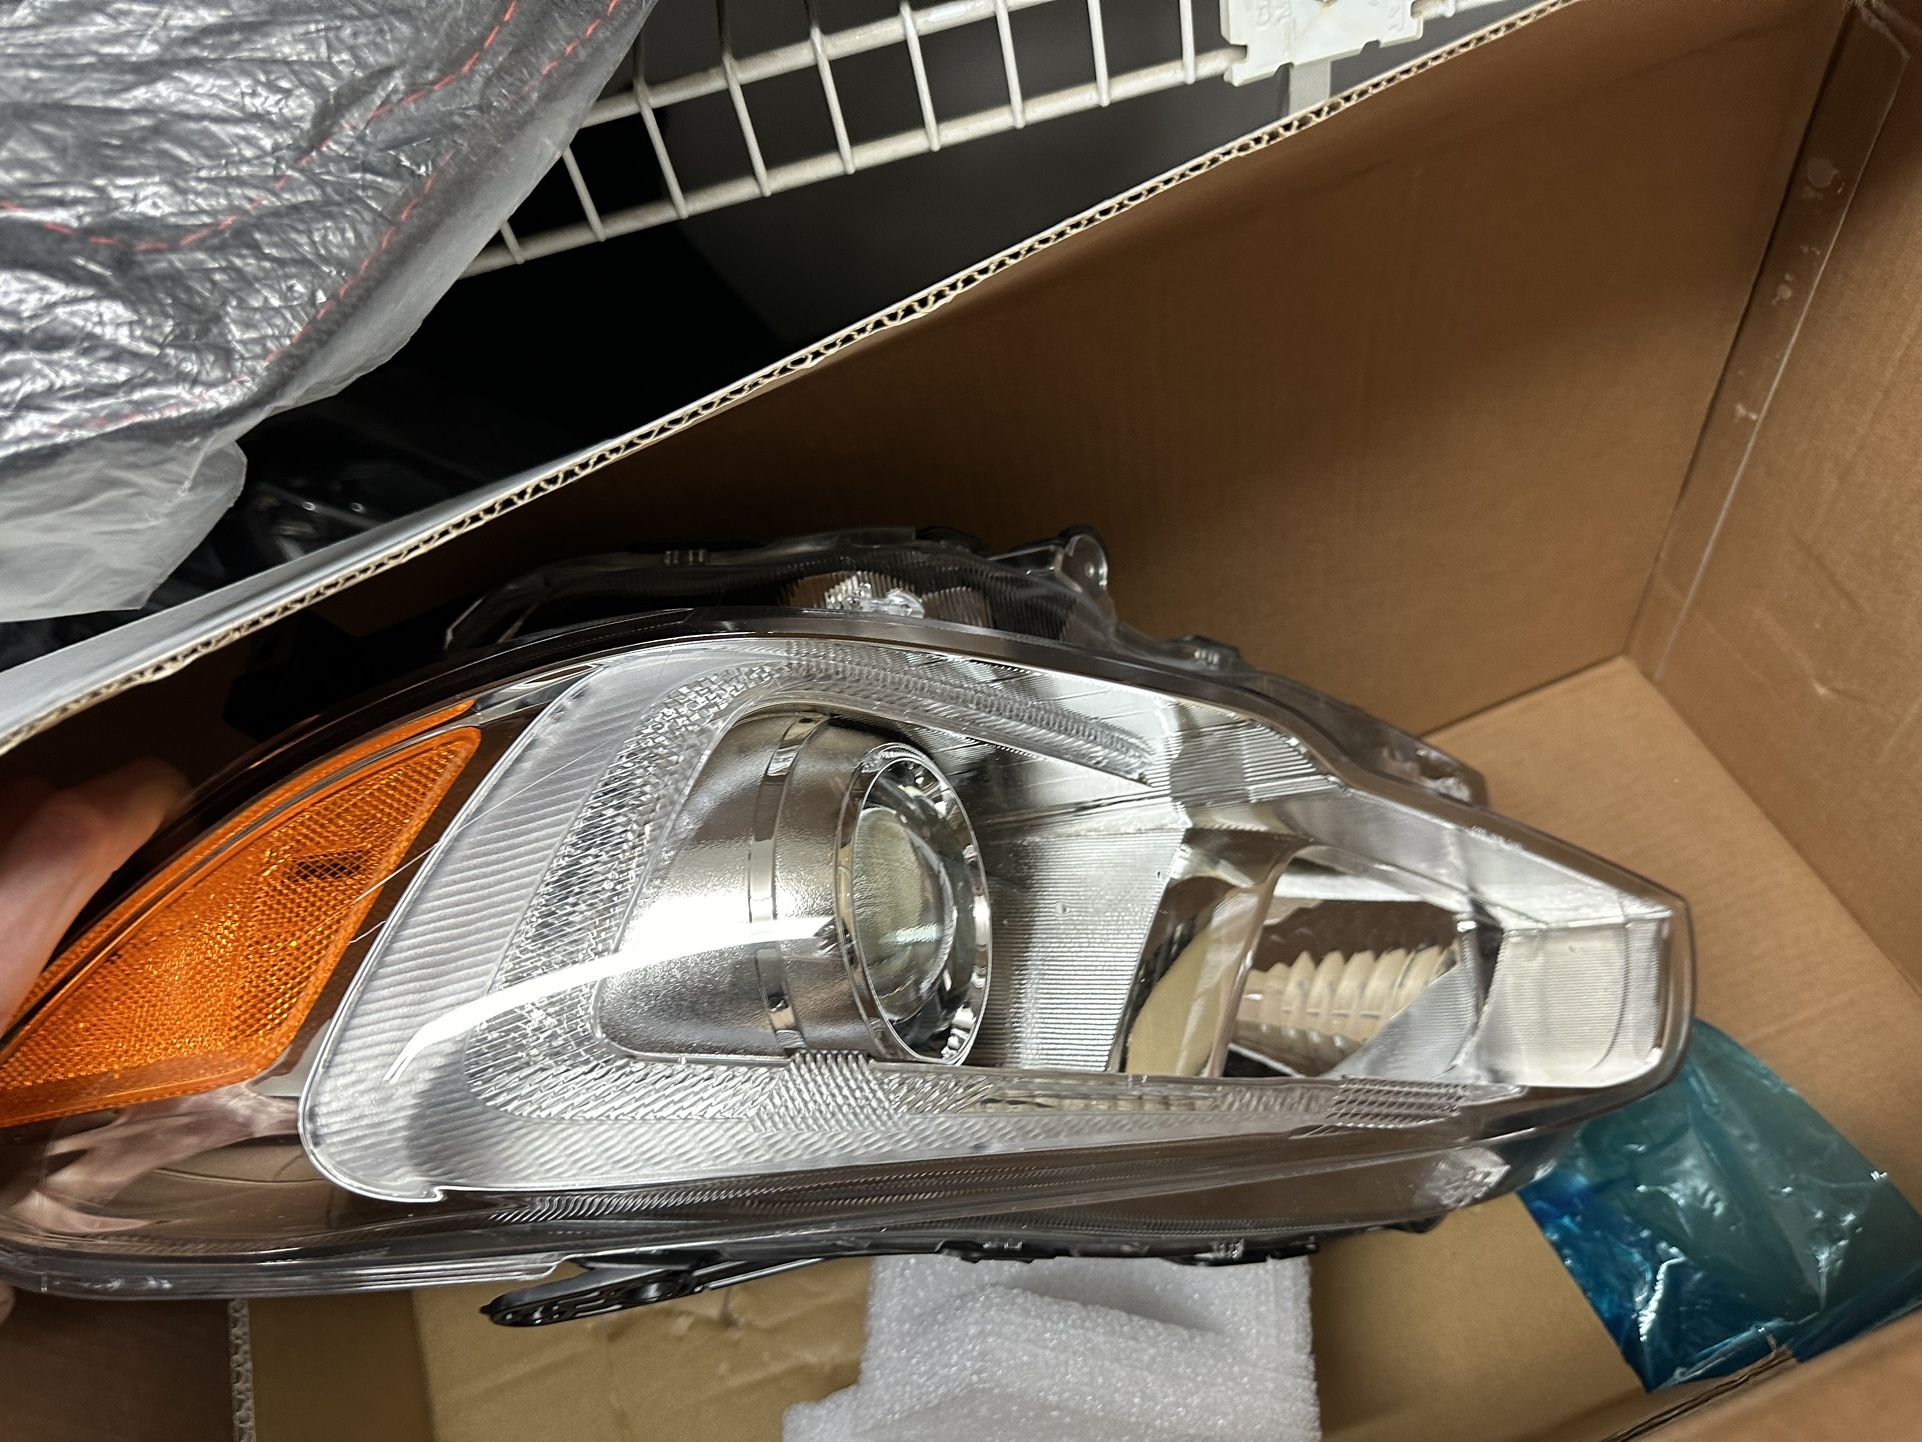 2016 Subaru Wrx Headlights